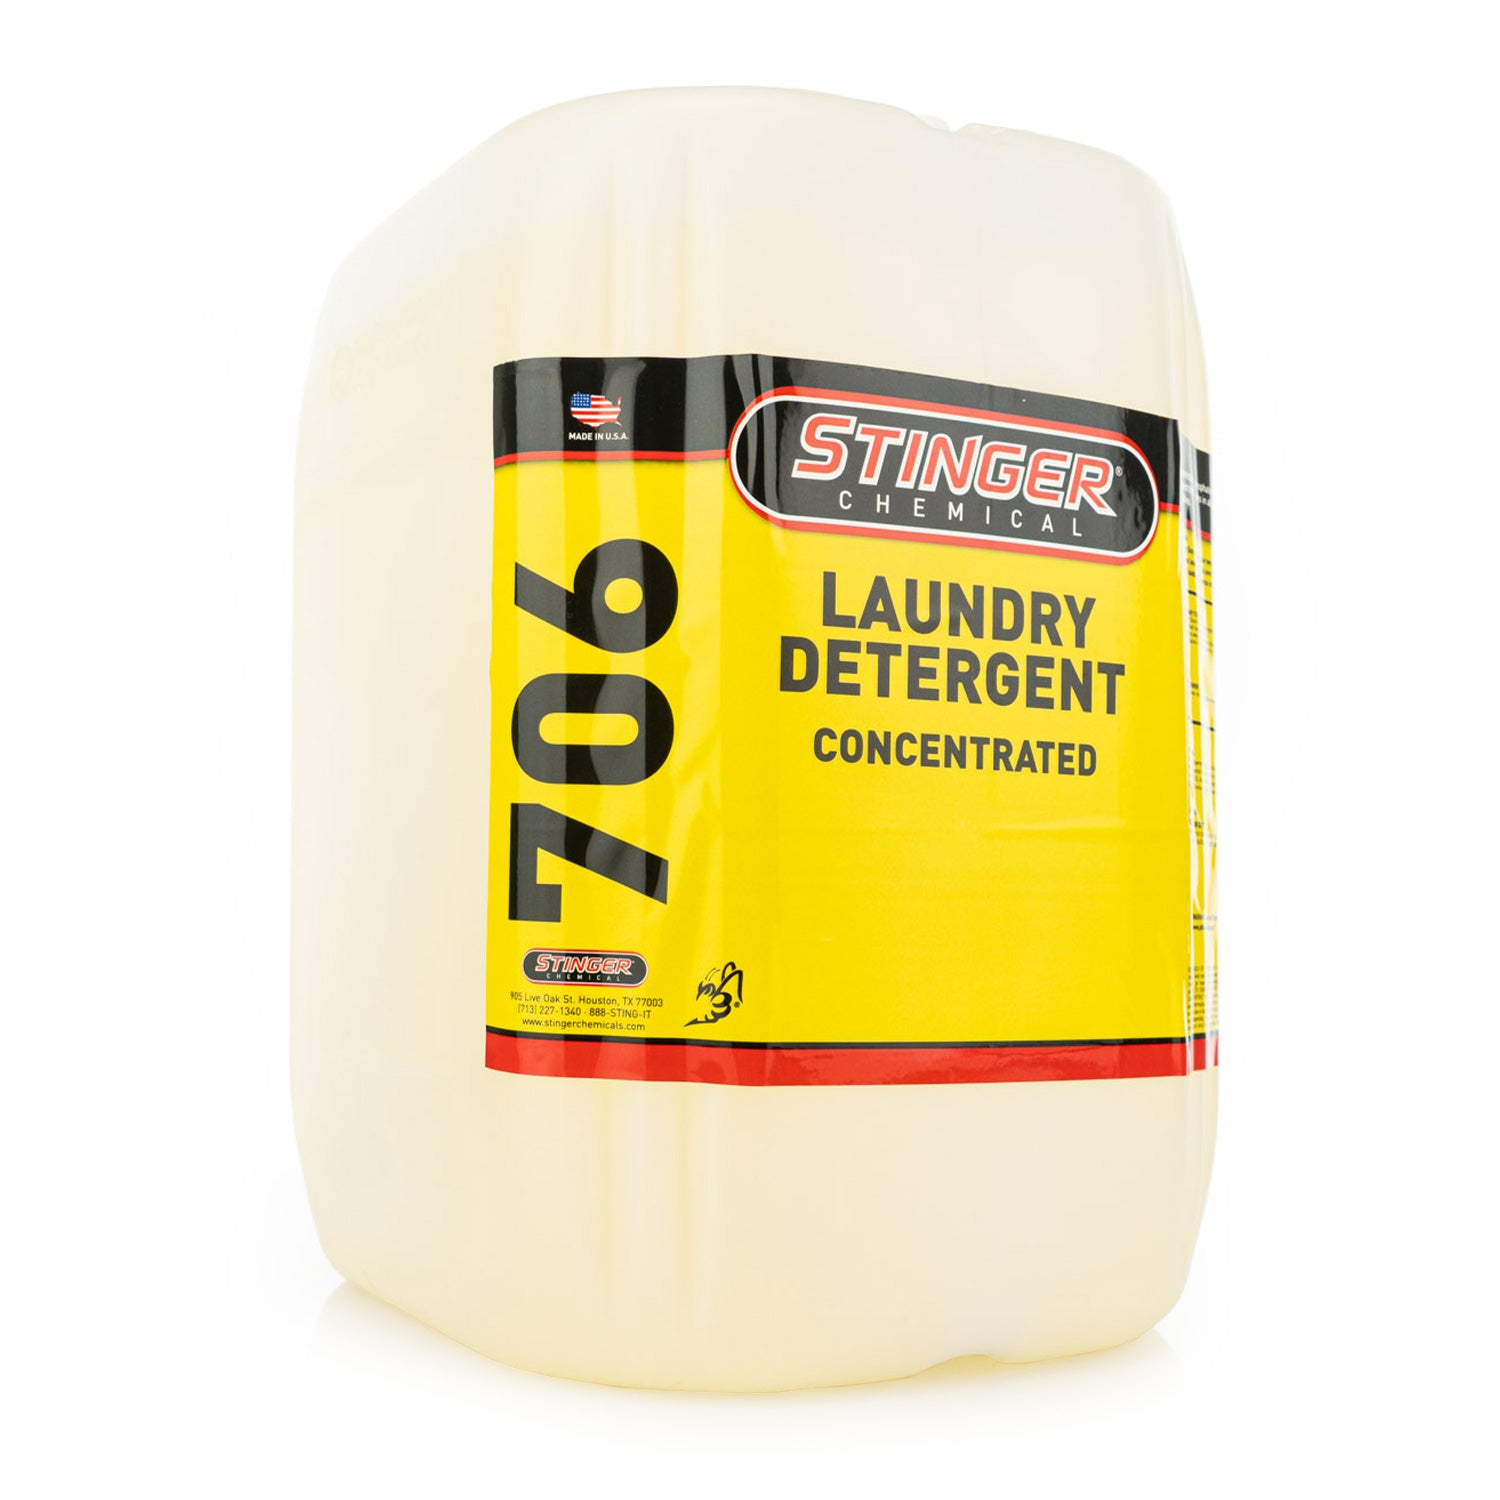 Stinger Chemical Laundry Detergent